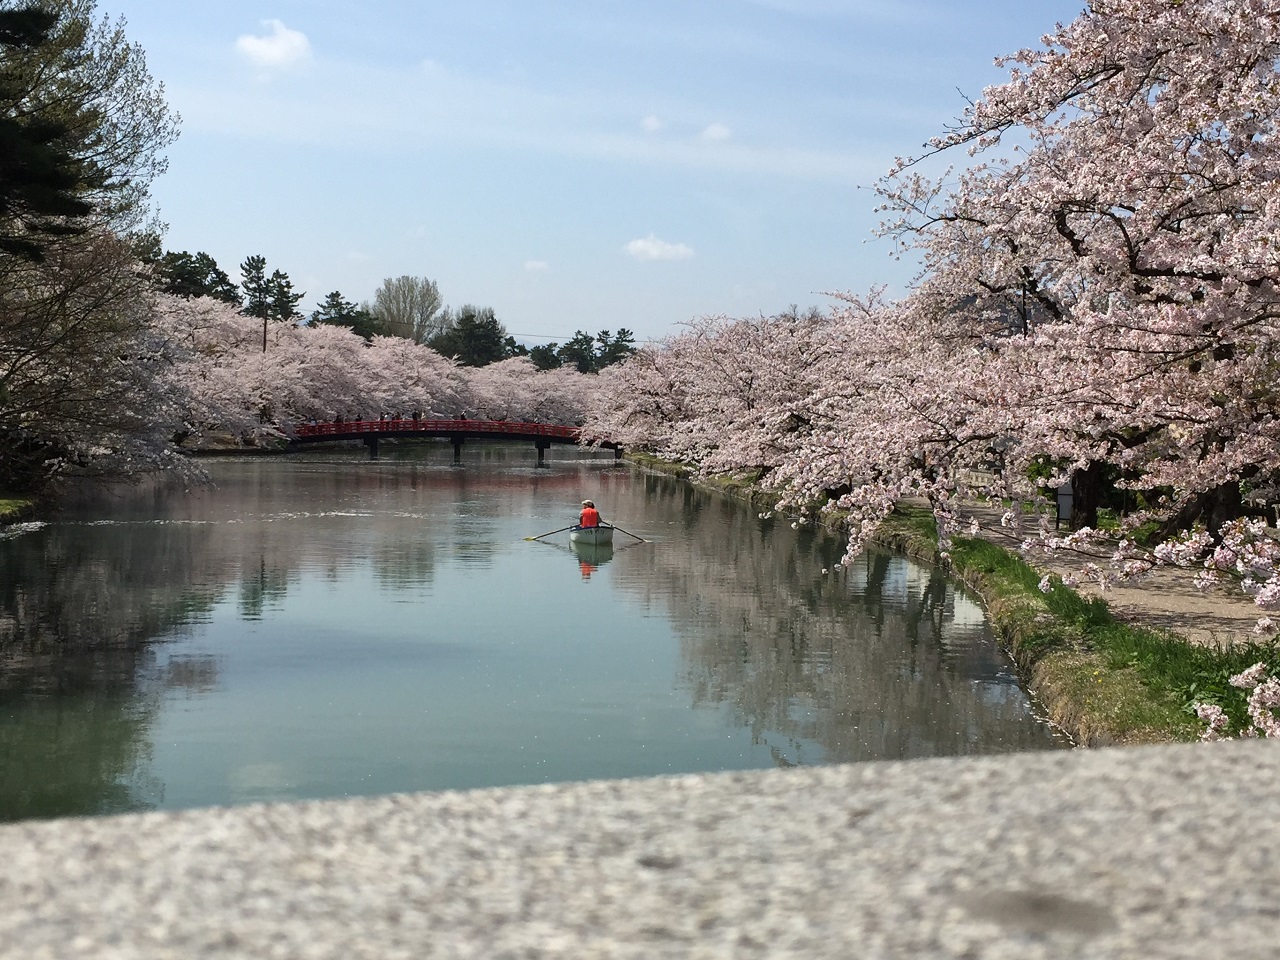 สวน ปราสาท ฮิโรซากิ ซากุระ